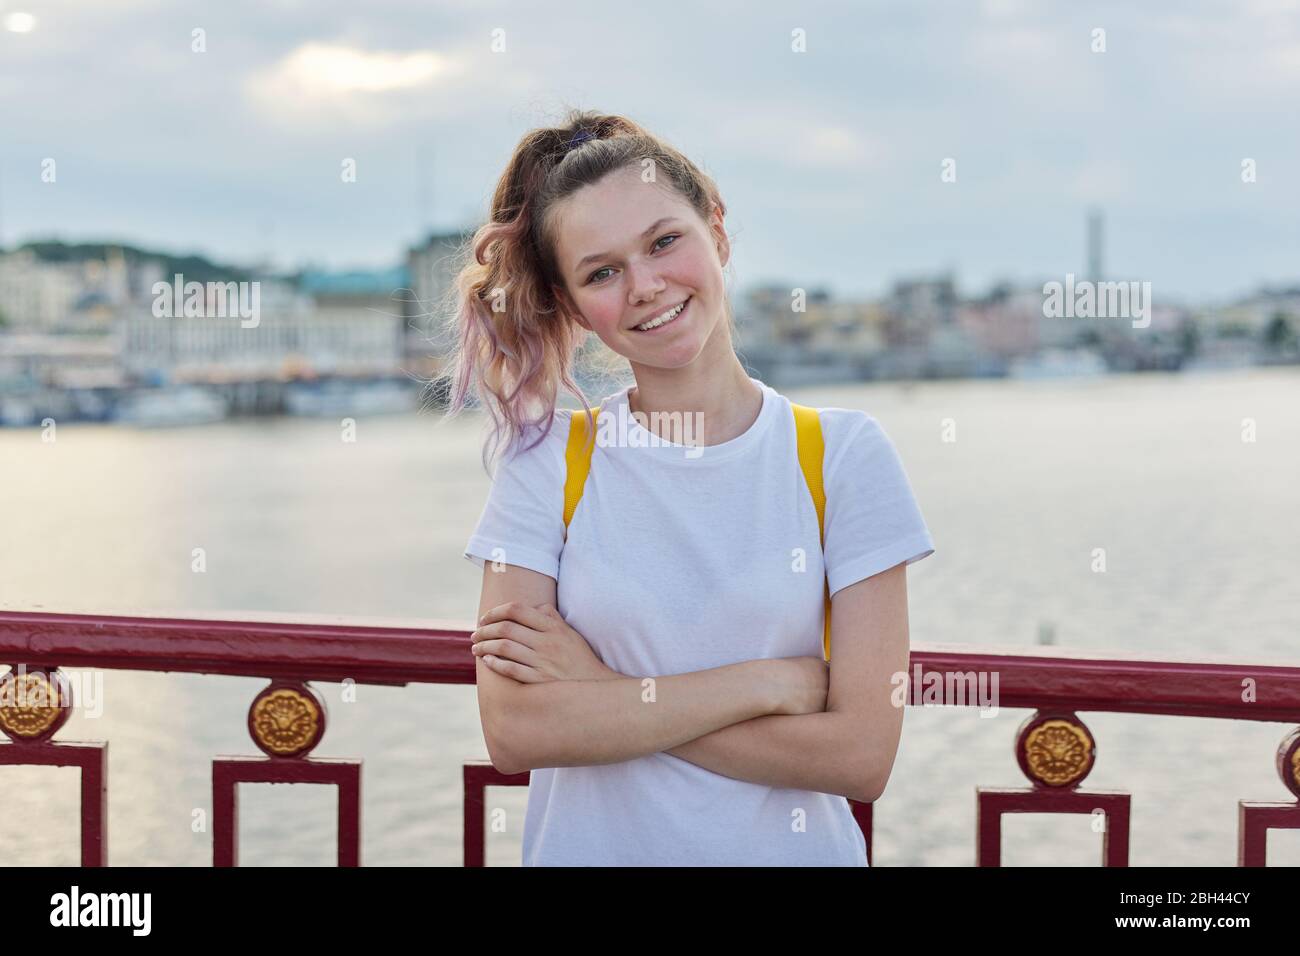 Outdoor-Porträt von lächelnden Teenager-Mädchen von 15, 16 Jahre alt mit gefalteten Armen, Rucksack Blick auf die Kamera. Mädchen auf Brücke stehend, Sonnenuntergang Fluss b Stockfoto